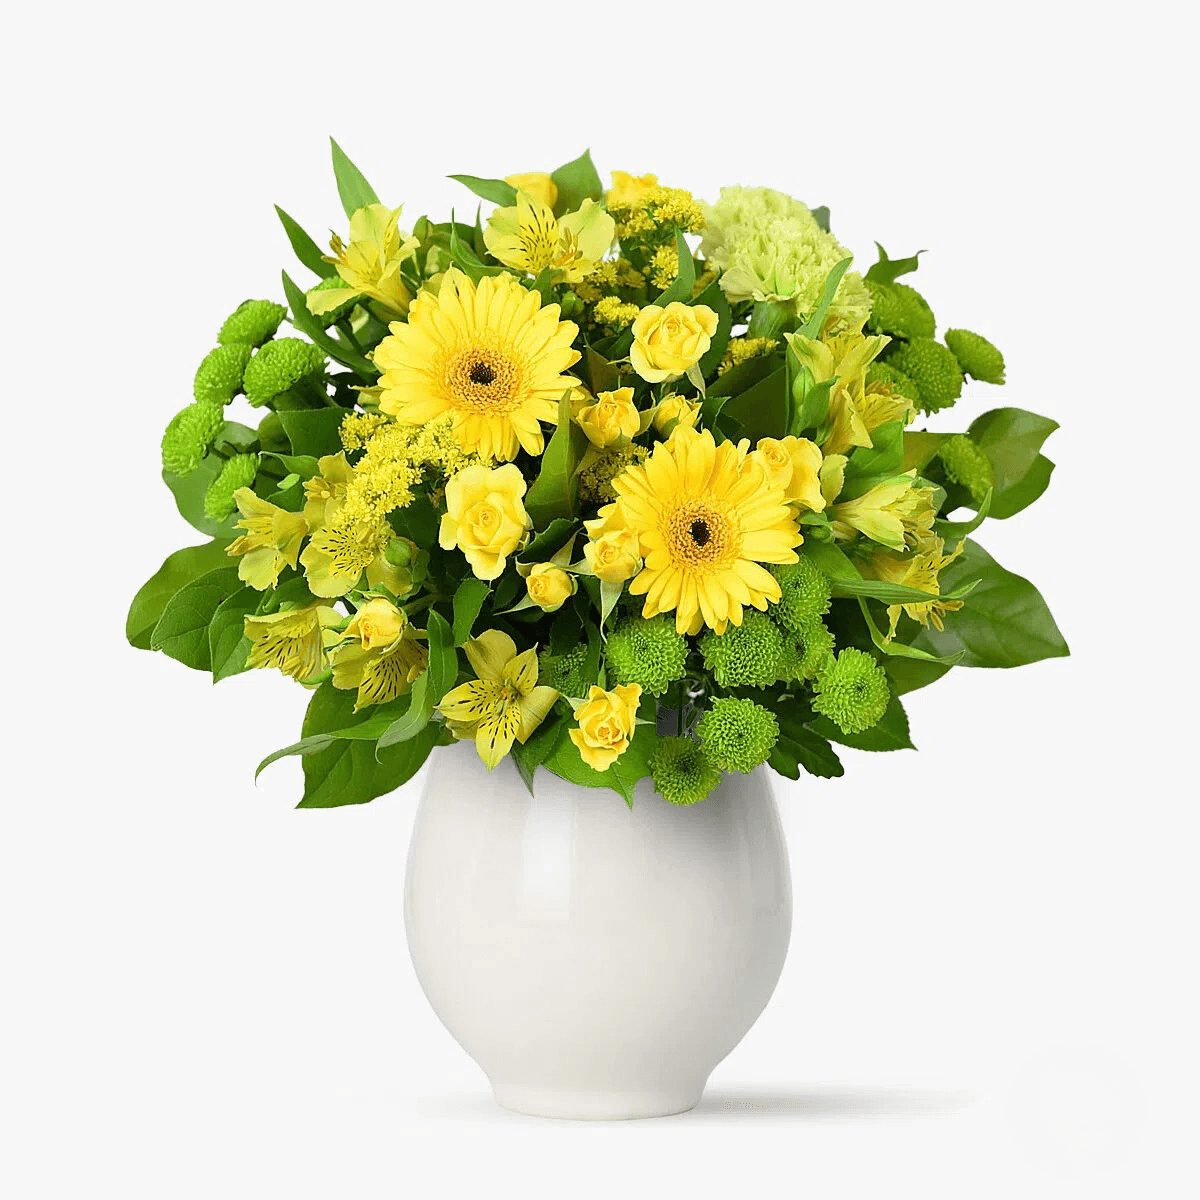 Buchet de flori cu 4 santini, alstroemeria galbena, minirosa galbena, minigerbera galbene Buchet Galben tomnatic